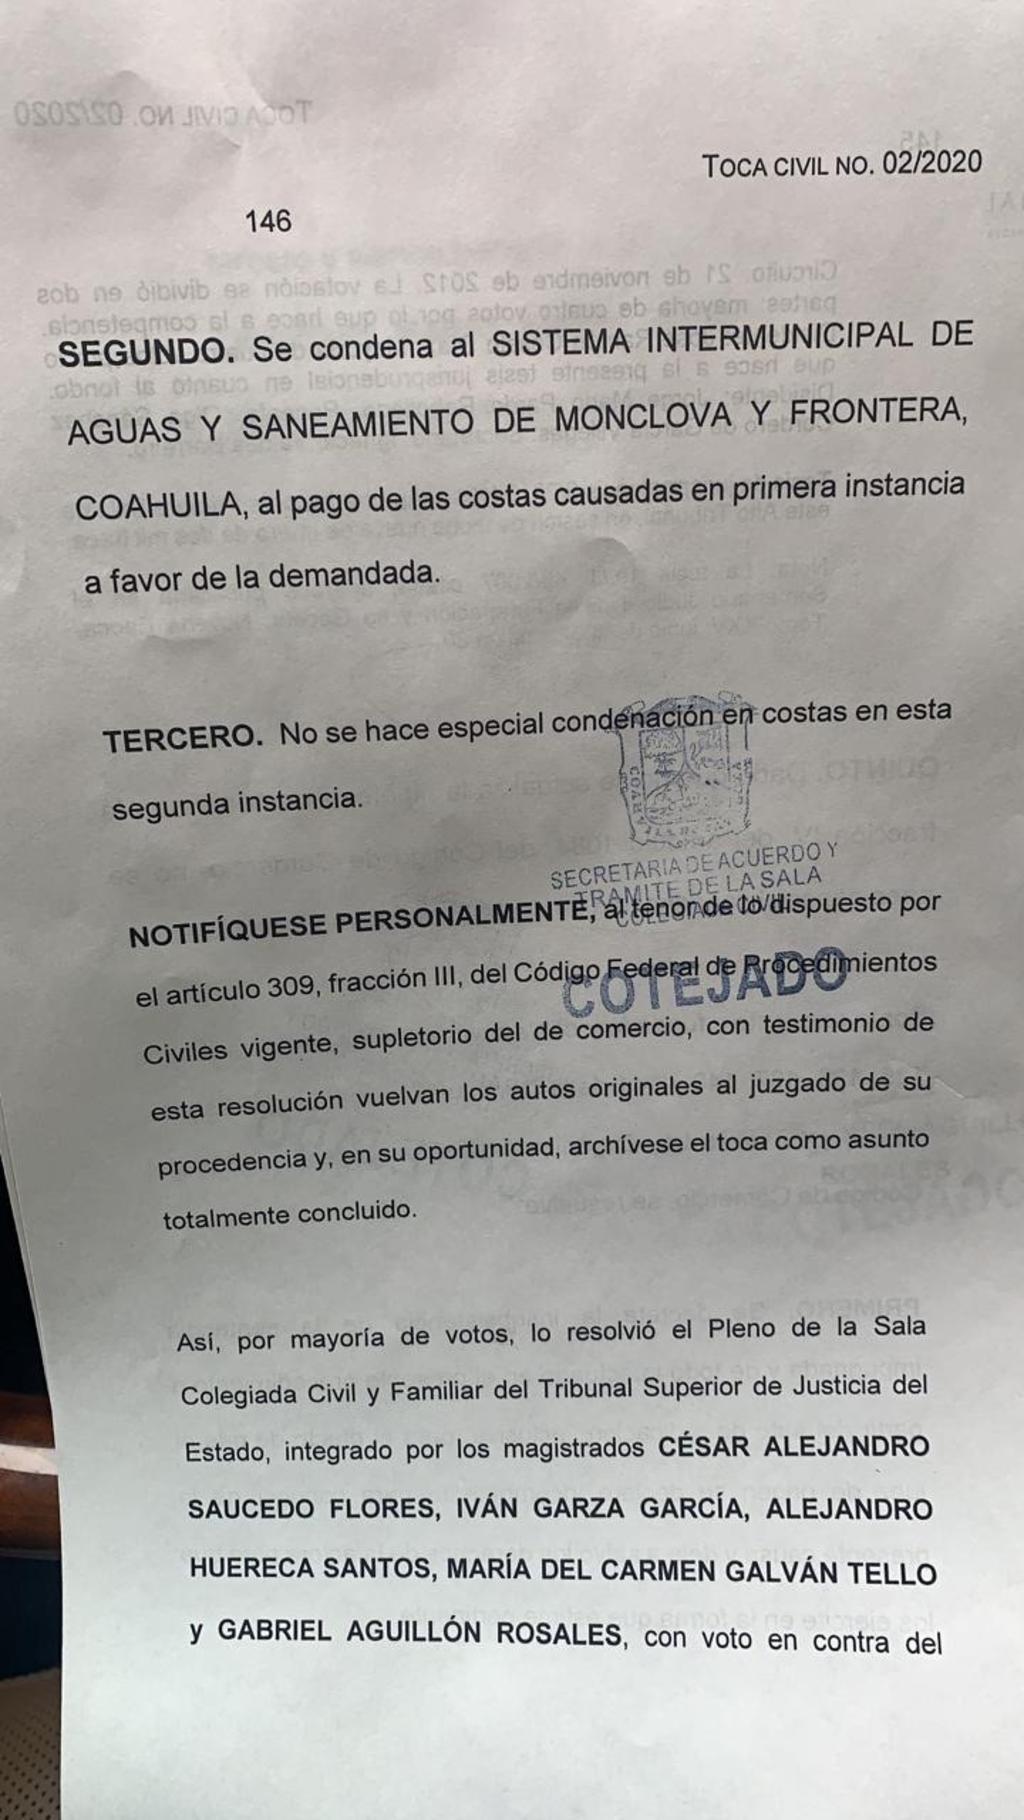 La dependencia sostuvo un juicio ordinario mercantil contra Agua Santa María en el juzgado Primero de lo Civil de la Ciudad de Monclova, bajo el número el expediente 219/2018.